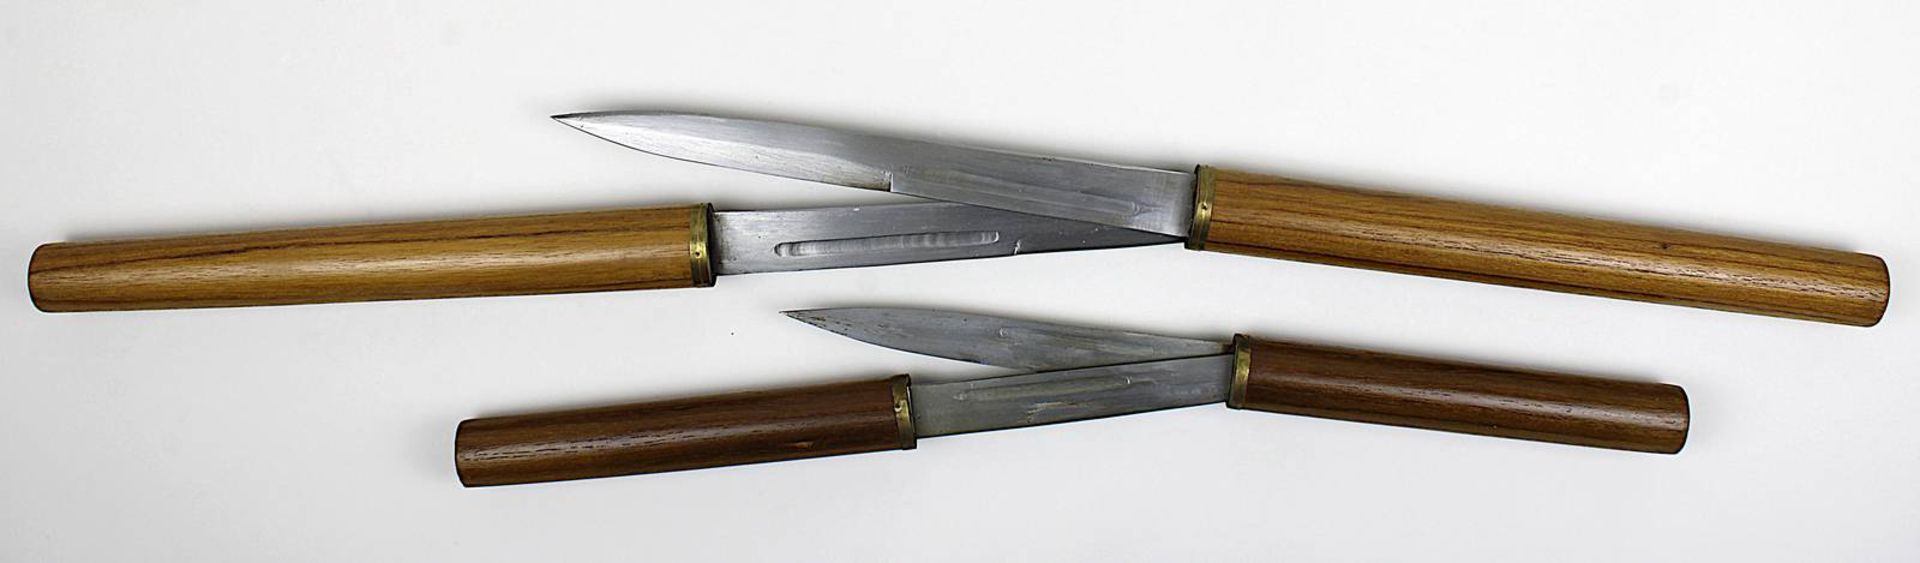 2 twin-blade-Stockmesser, Südostasien: jew. hälftig aufgeteilt, jew. als 2 Messer mit